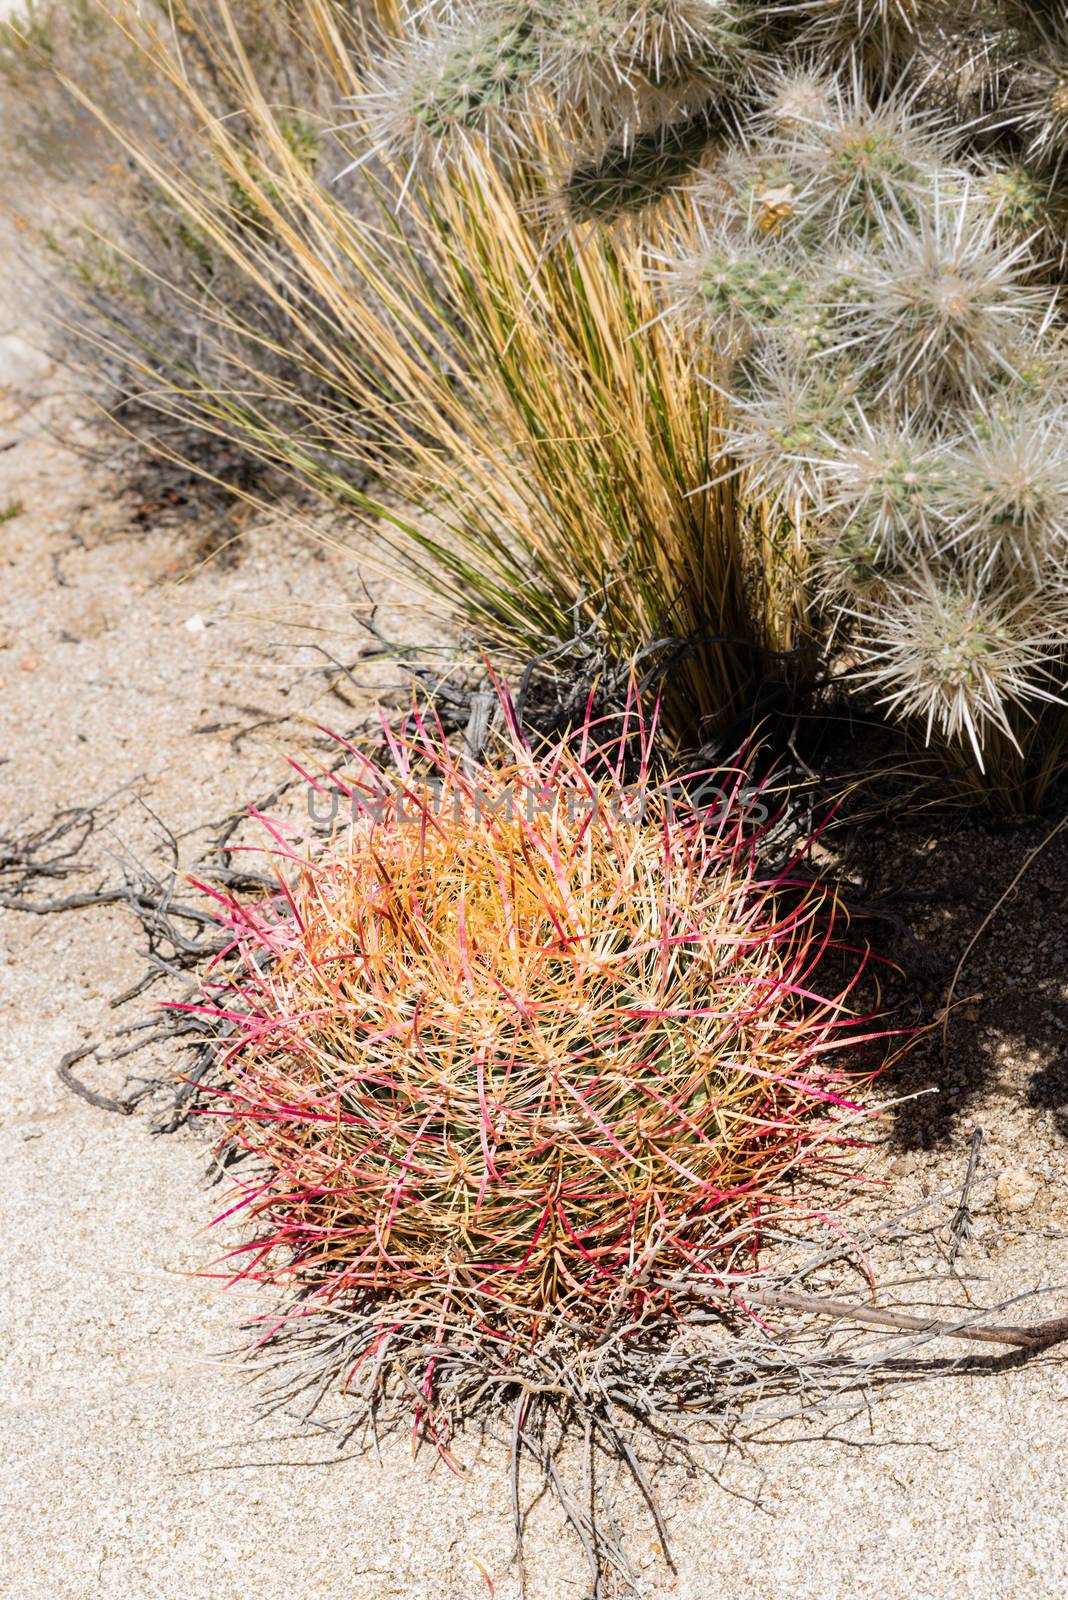 Cactus varieties in Joshua Tree National Park, California by Njean